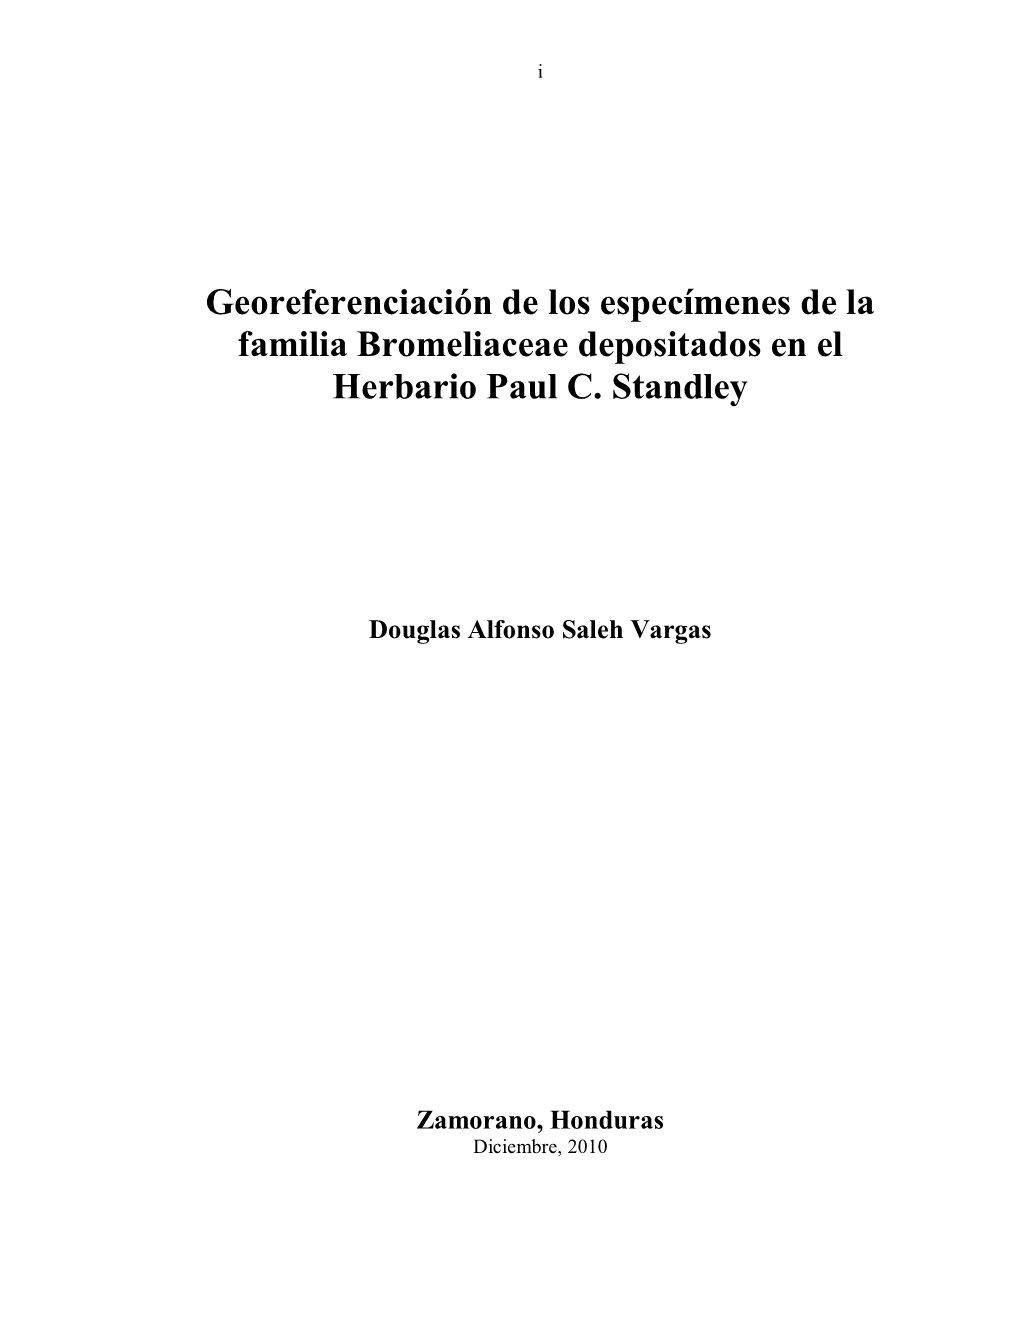 Georeferenciación De Los Especímenes De La Familia Bromeliaceae Depositados En El Herbario Paul C